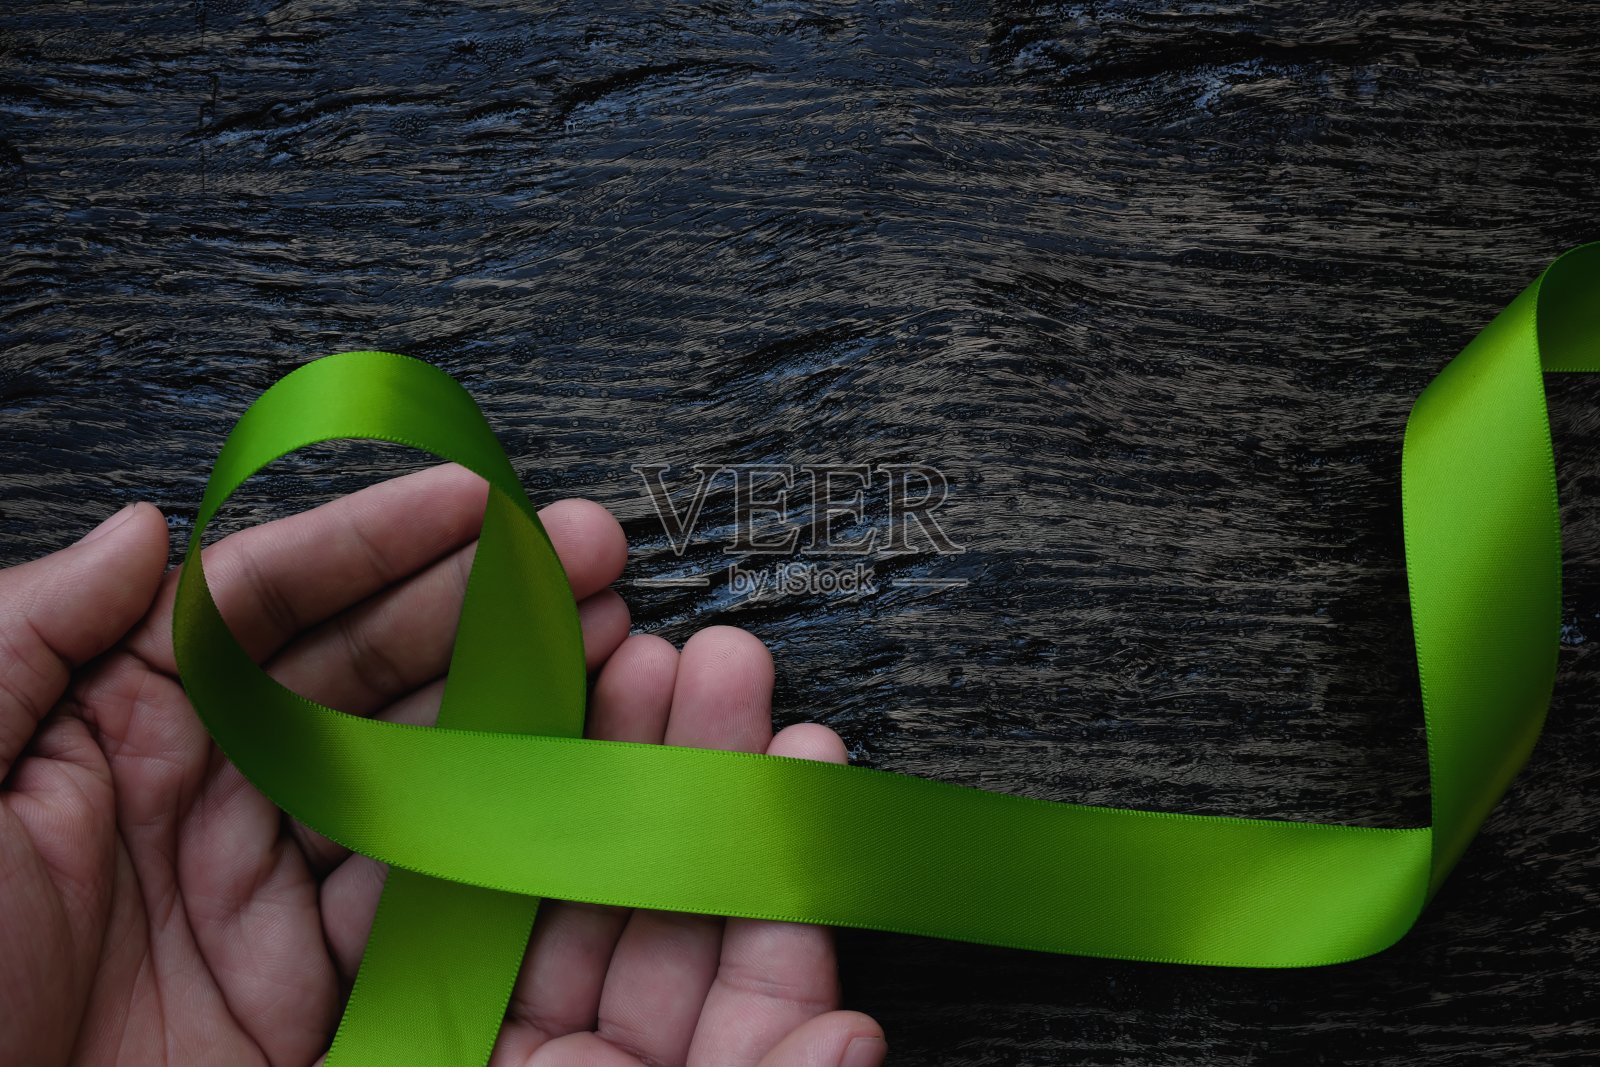 俯视图的手持有石灰绿色丝带在黑暗的背景。非霍奇金淋巴瘤、莱姆病、肌肉萎缩症和产后抑郁症意识概念照片摄影图片